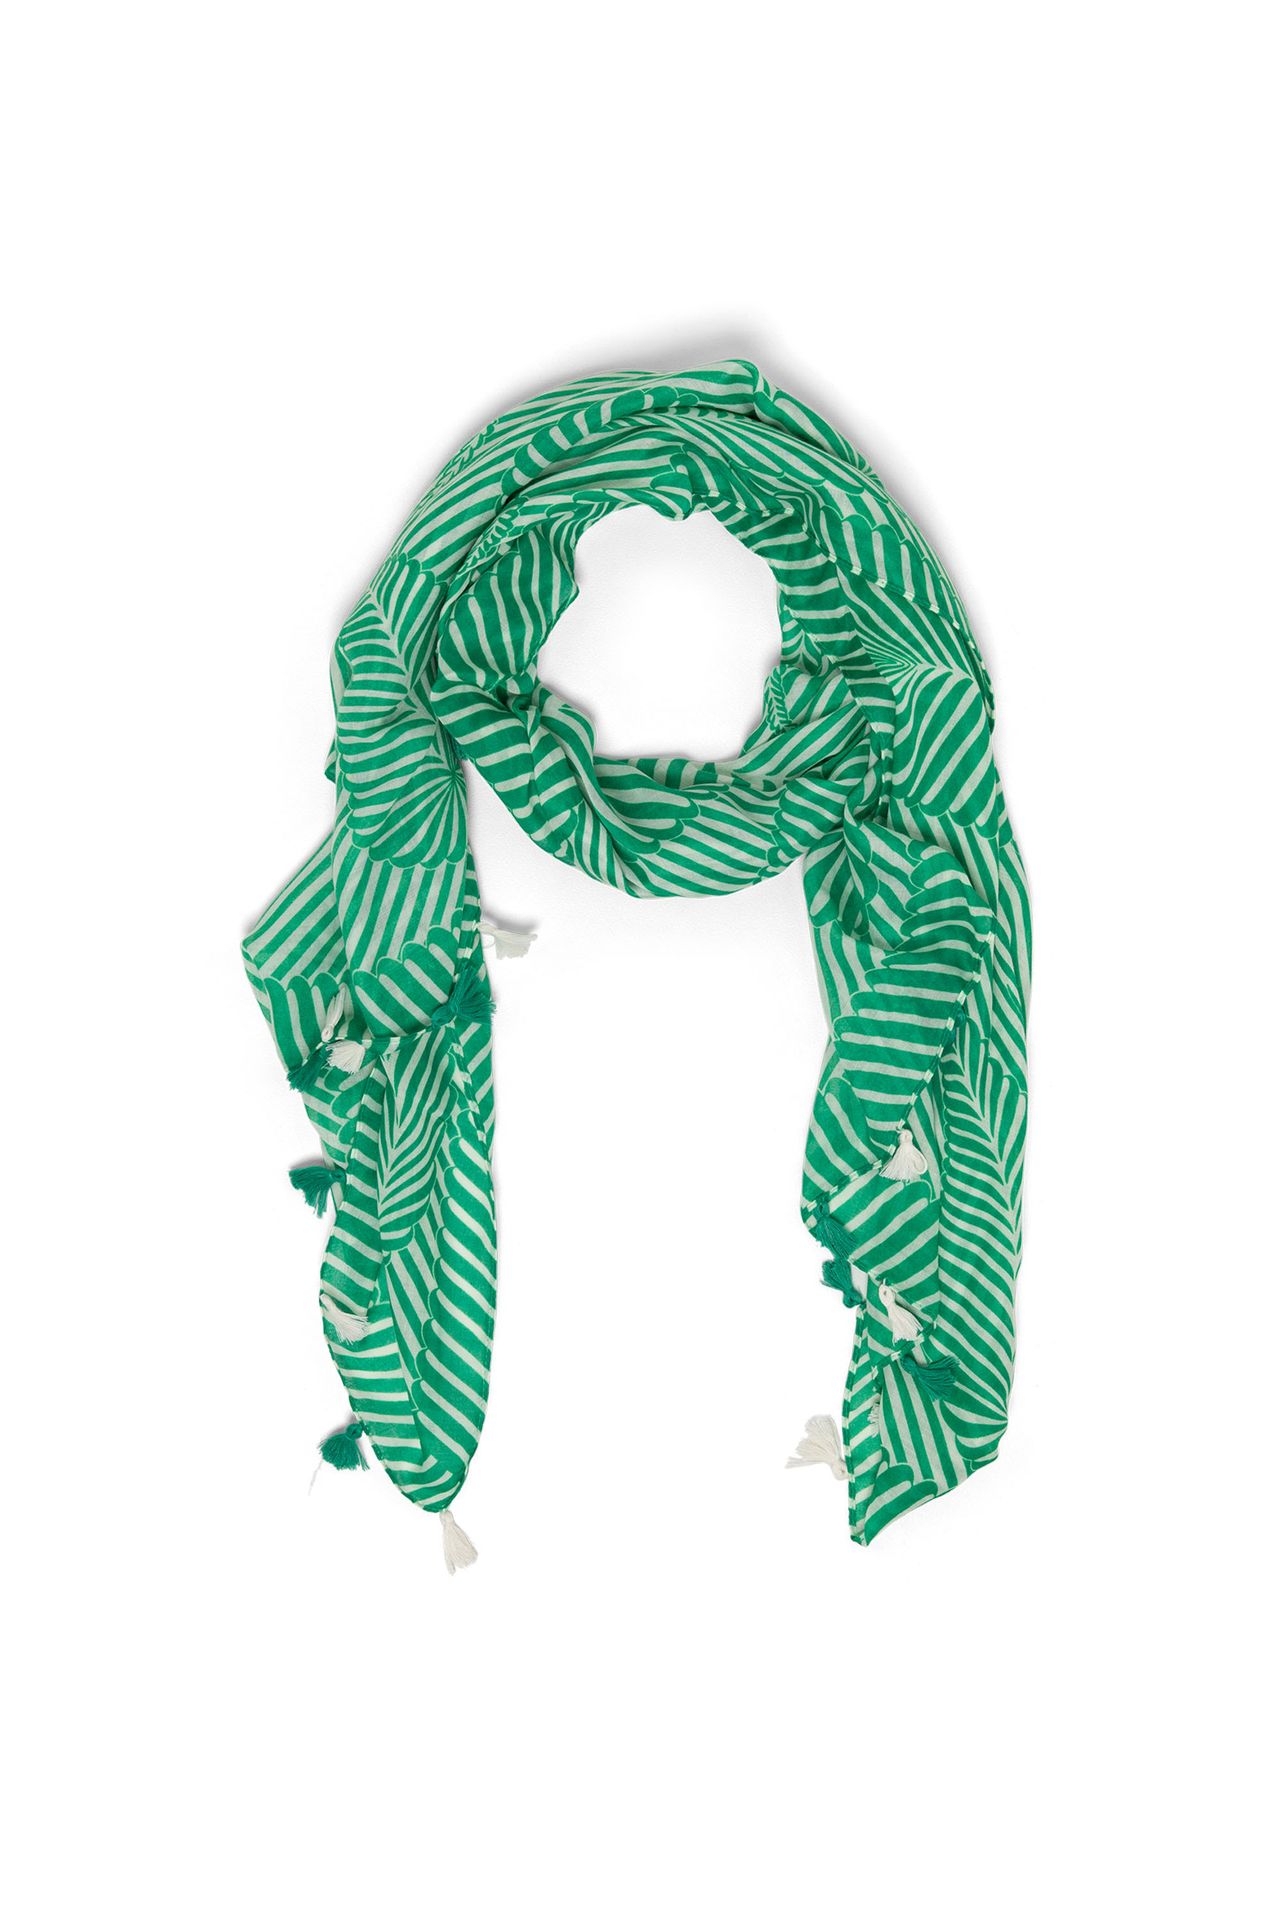 Norah Groene sjaal met tassels green/white 213605-531